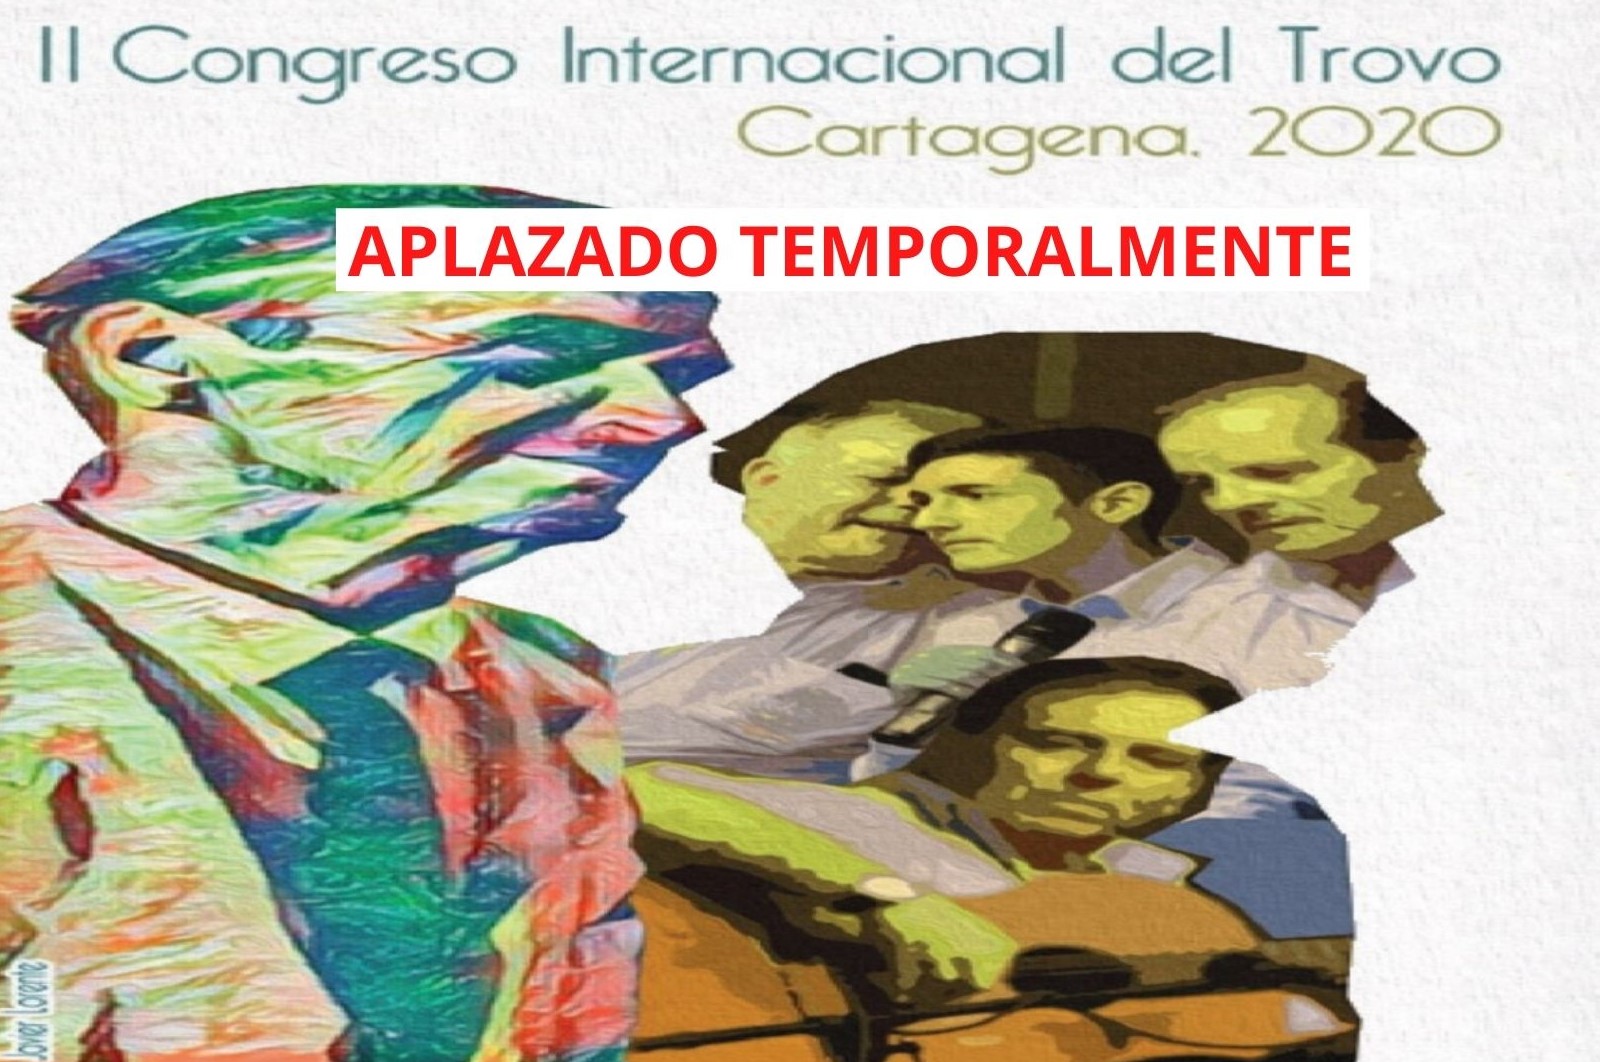 APLAZADO TEMPORALMENTE II Congreso Internacional del Trovo. Cartagena 2020